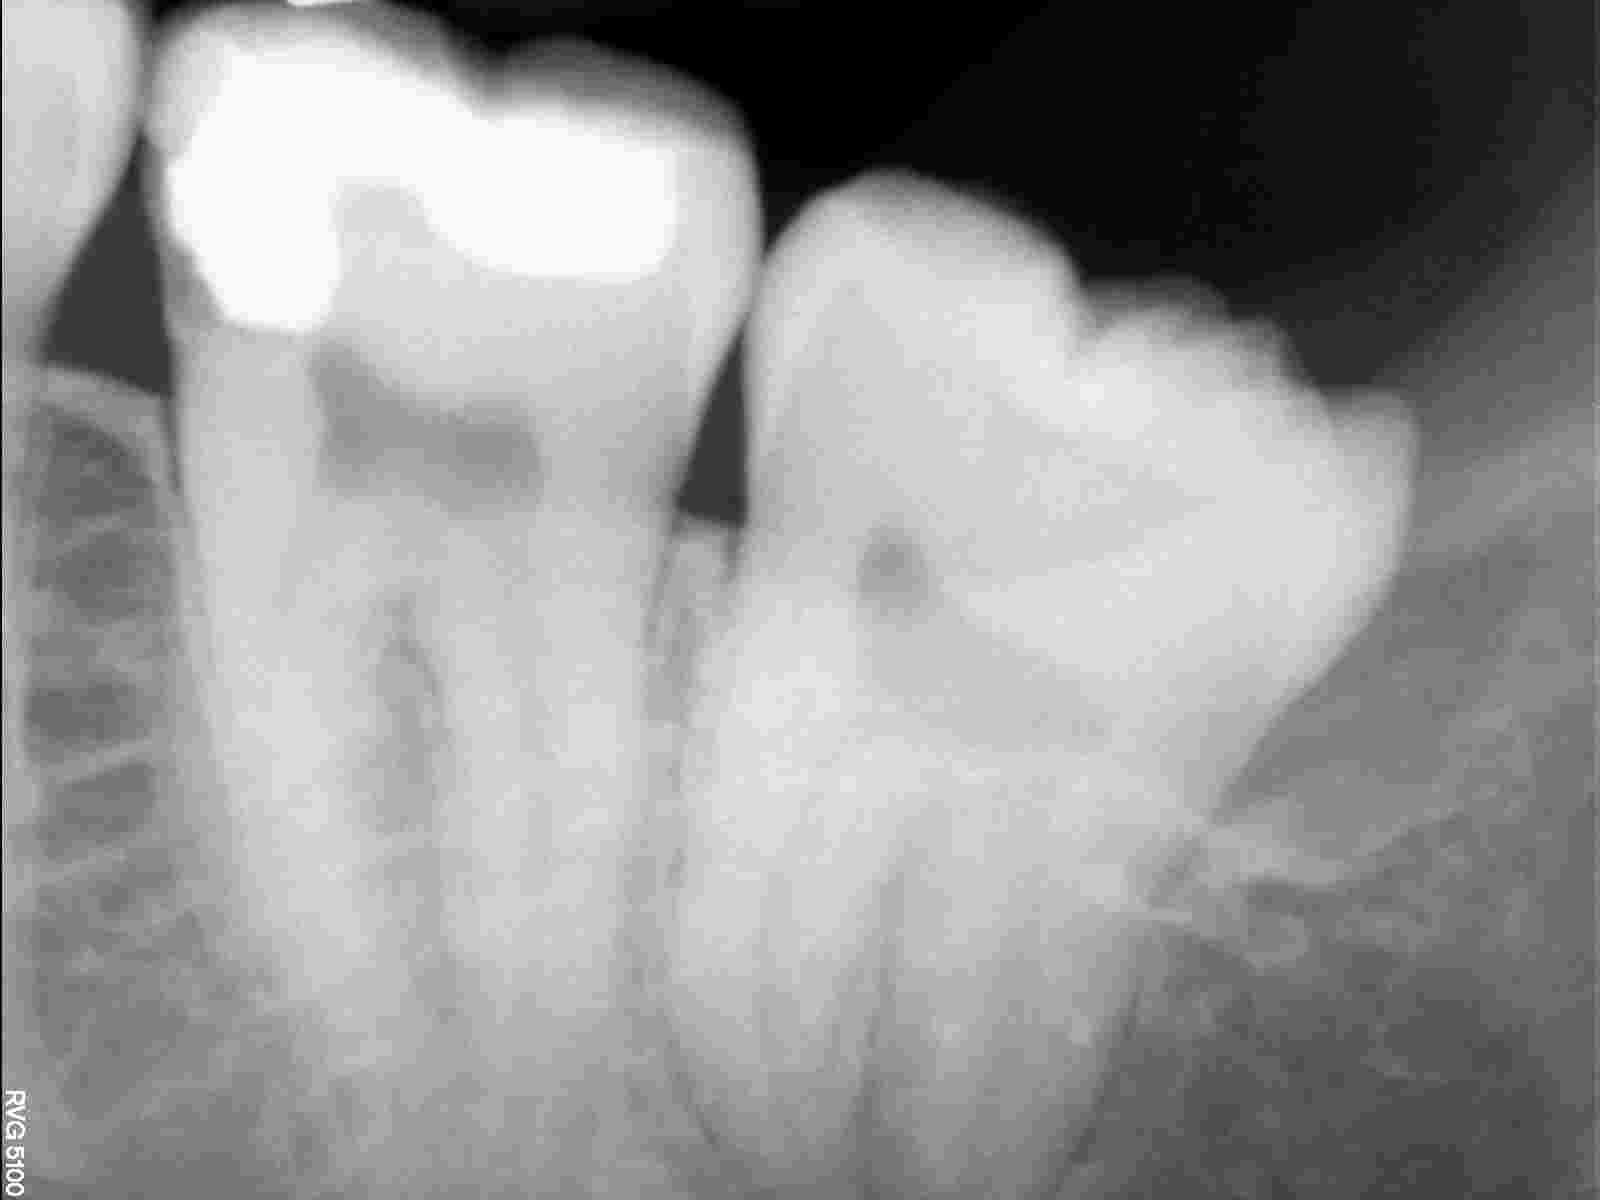 È normale che ci sia ancora l'ascesso visto che il dente è stato aperto 2gg fa?